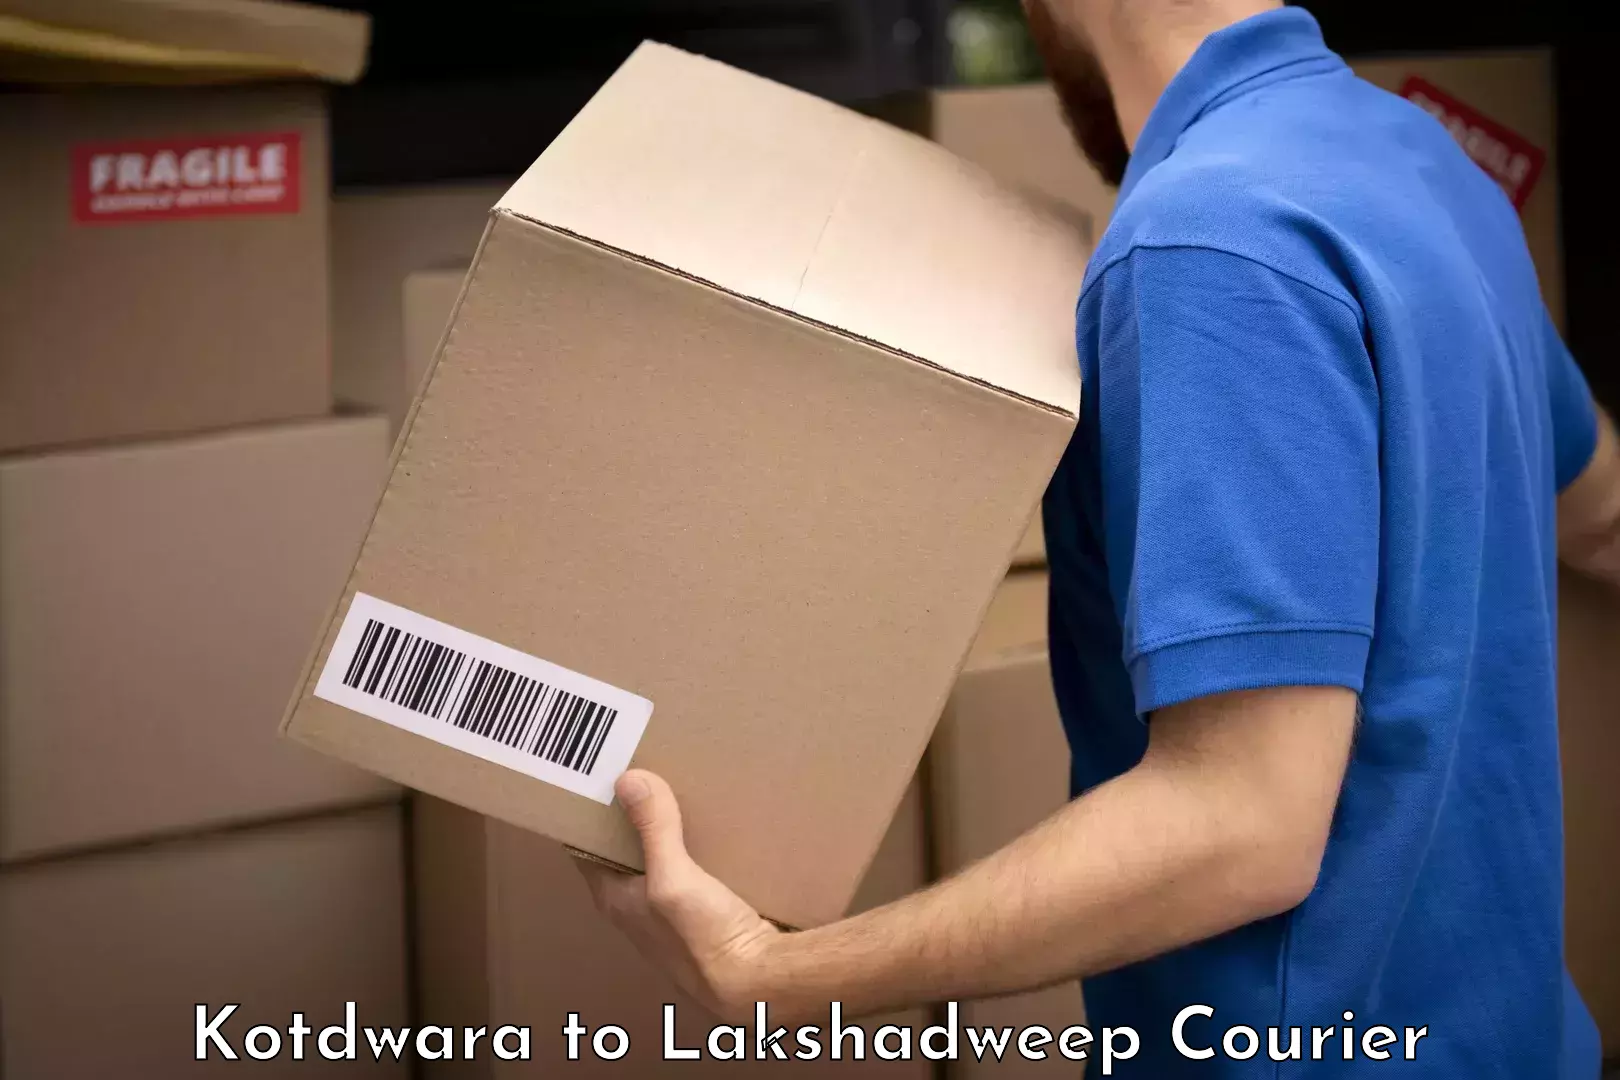 Luggage delivery optimization Kotdwara to Lakshadweep